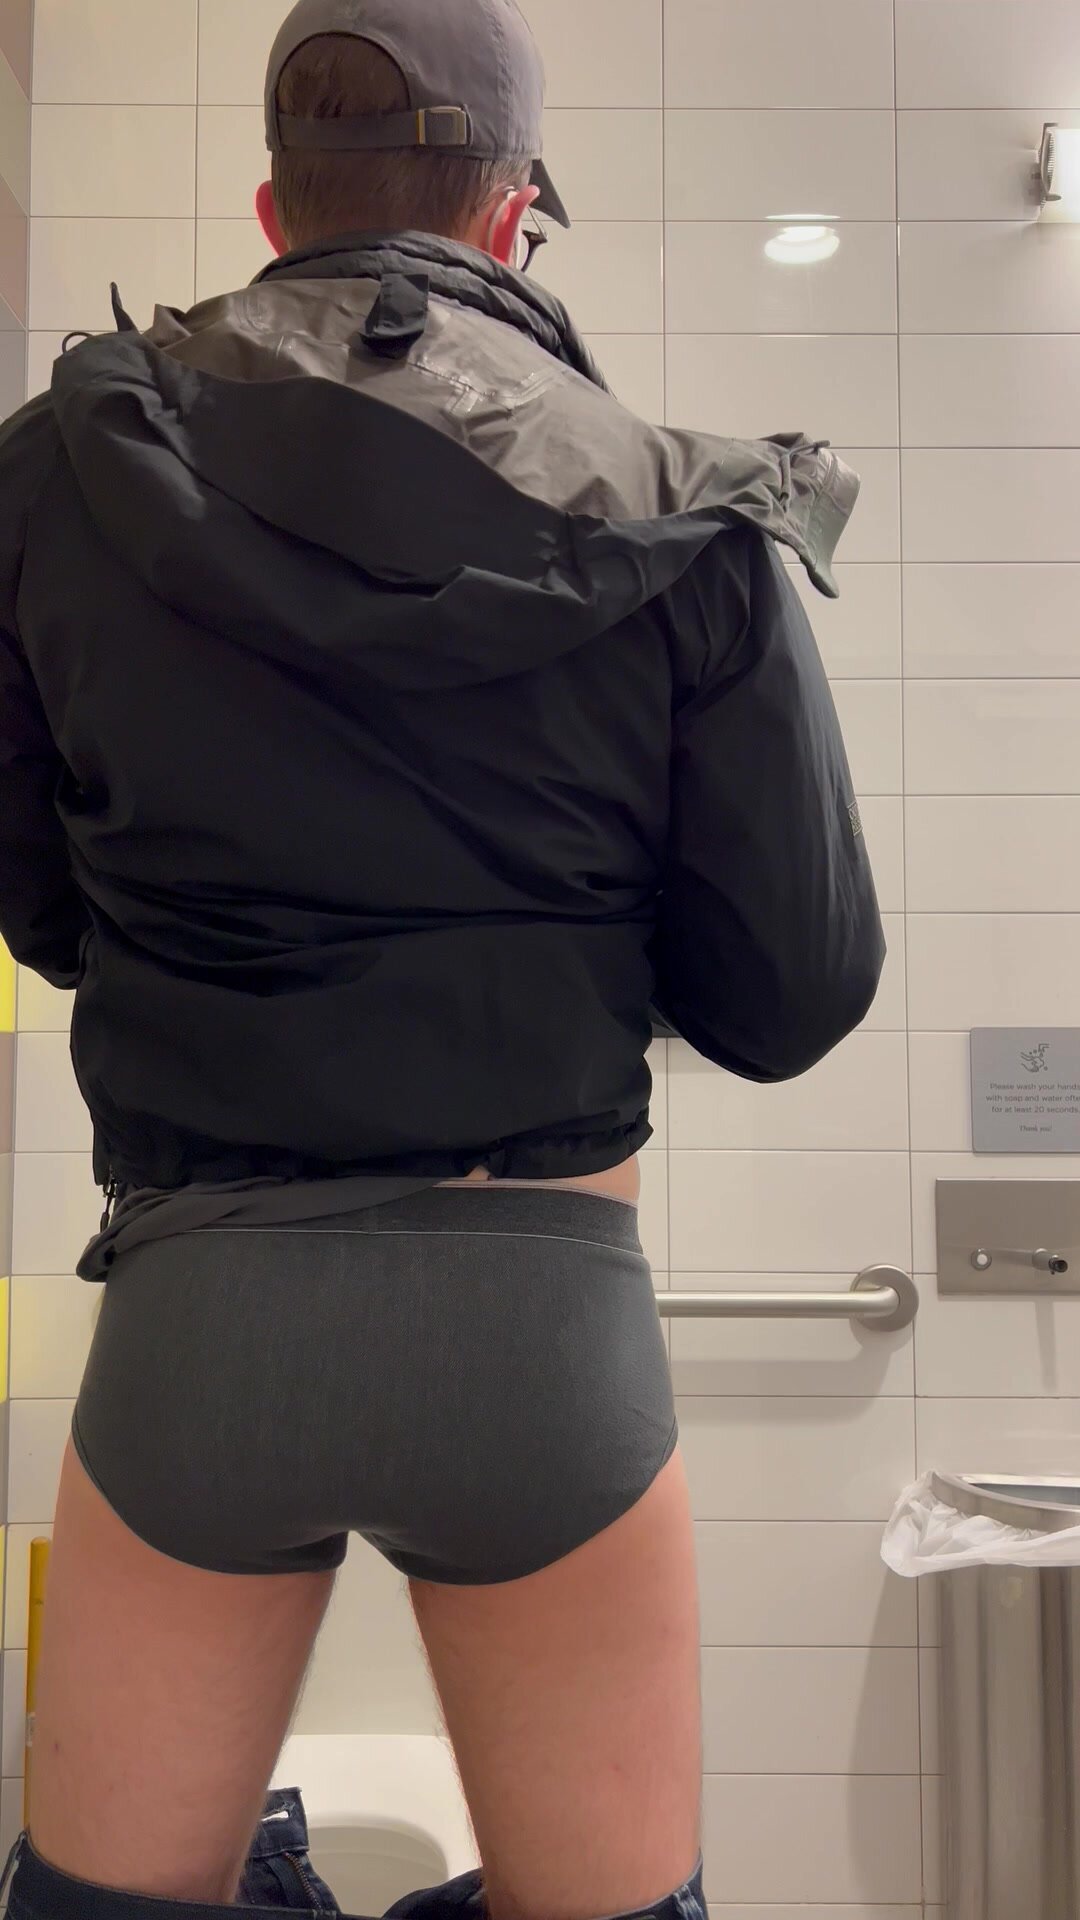 Pooping my pants in a public bathroom